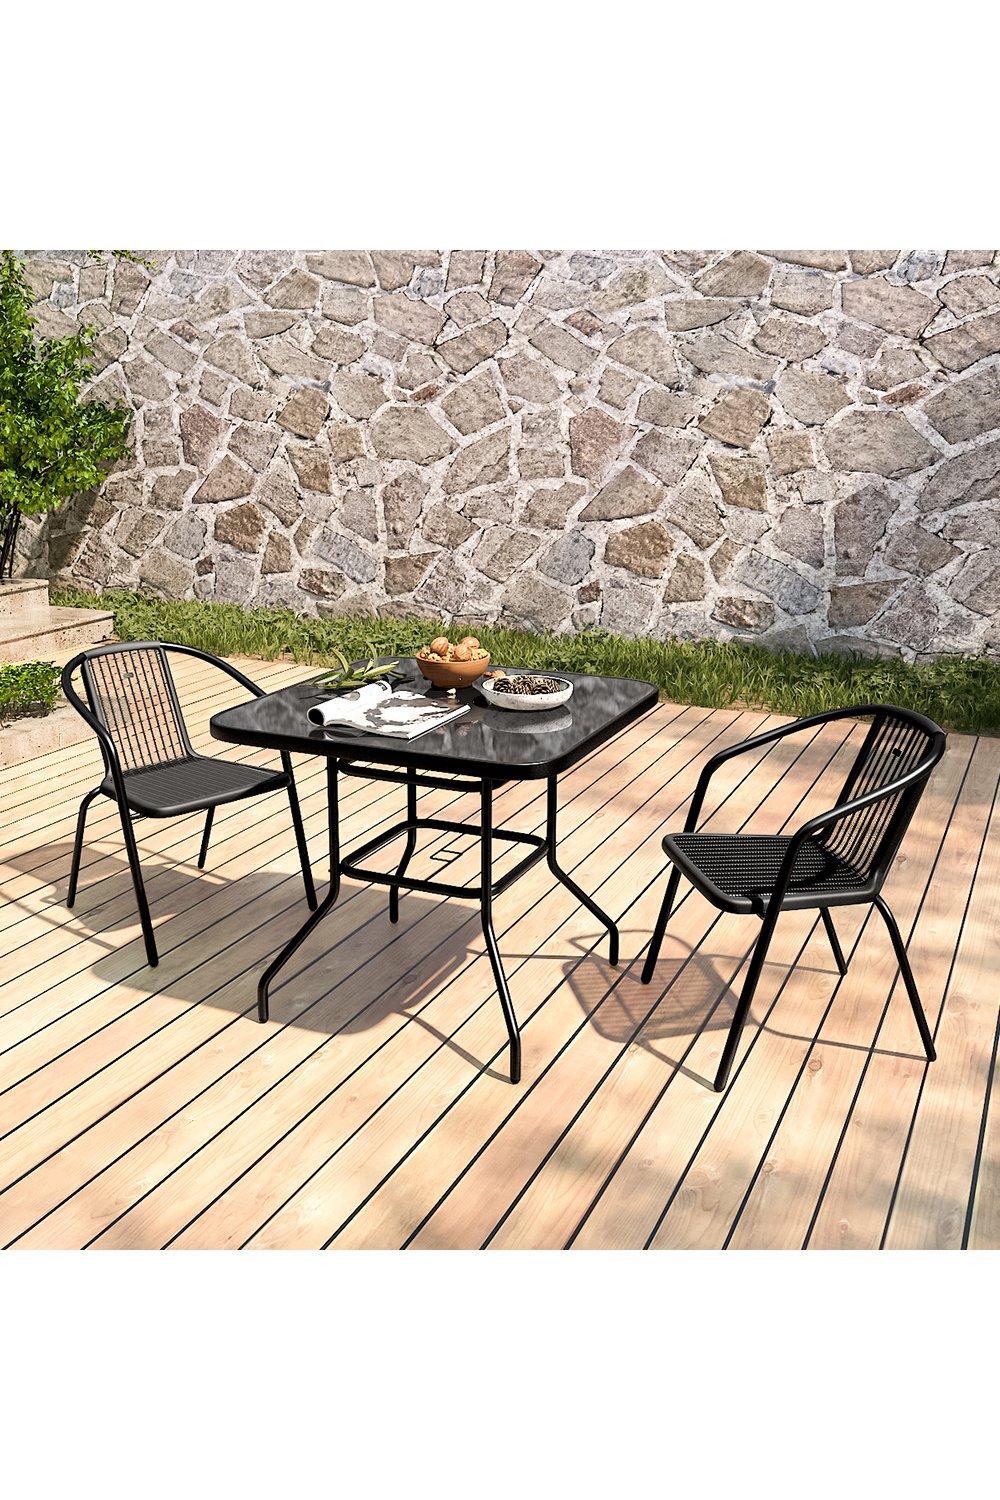 2 Seater Outdoor Garden Dining Bistro Set